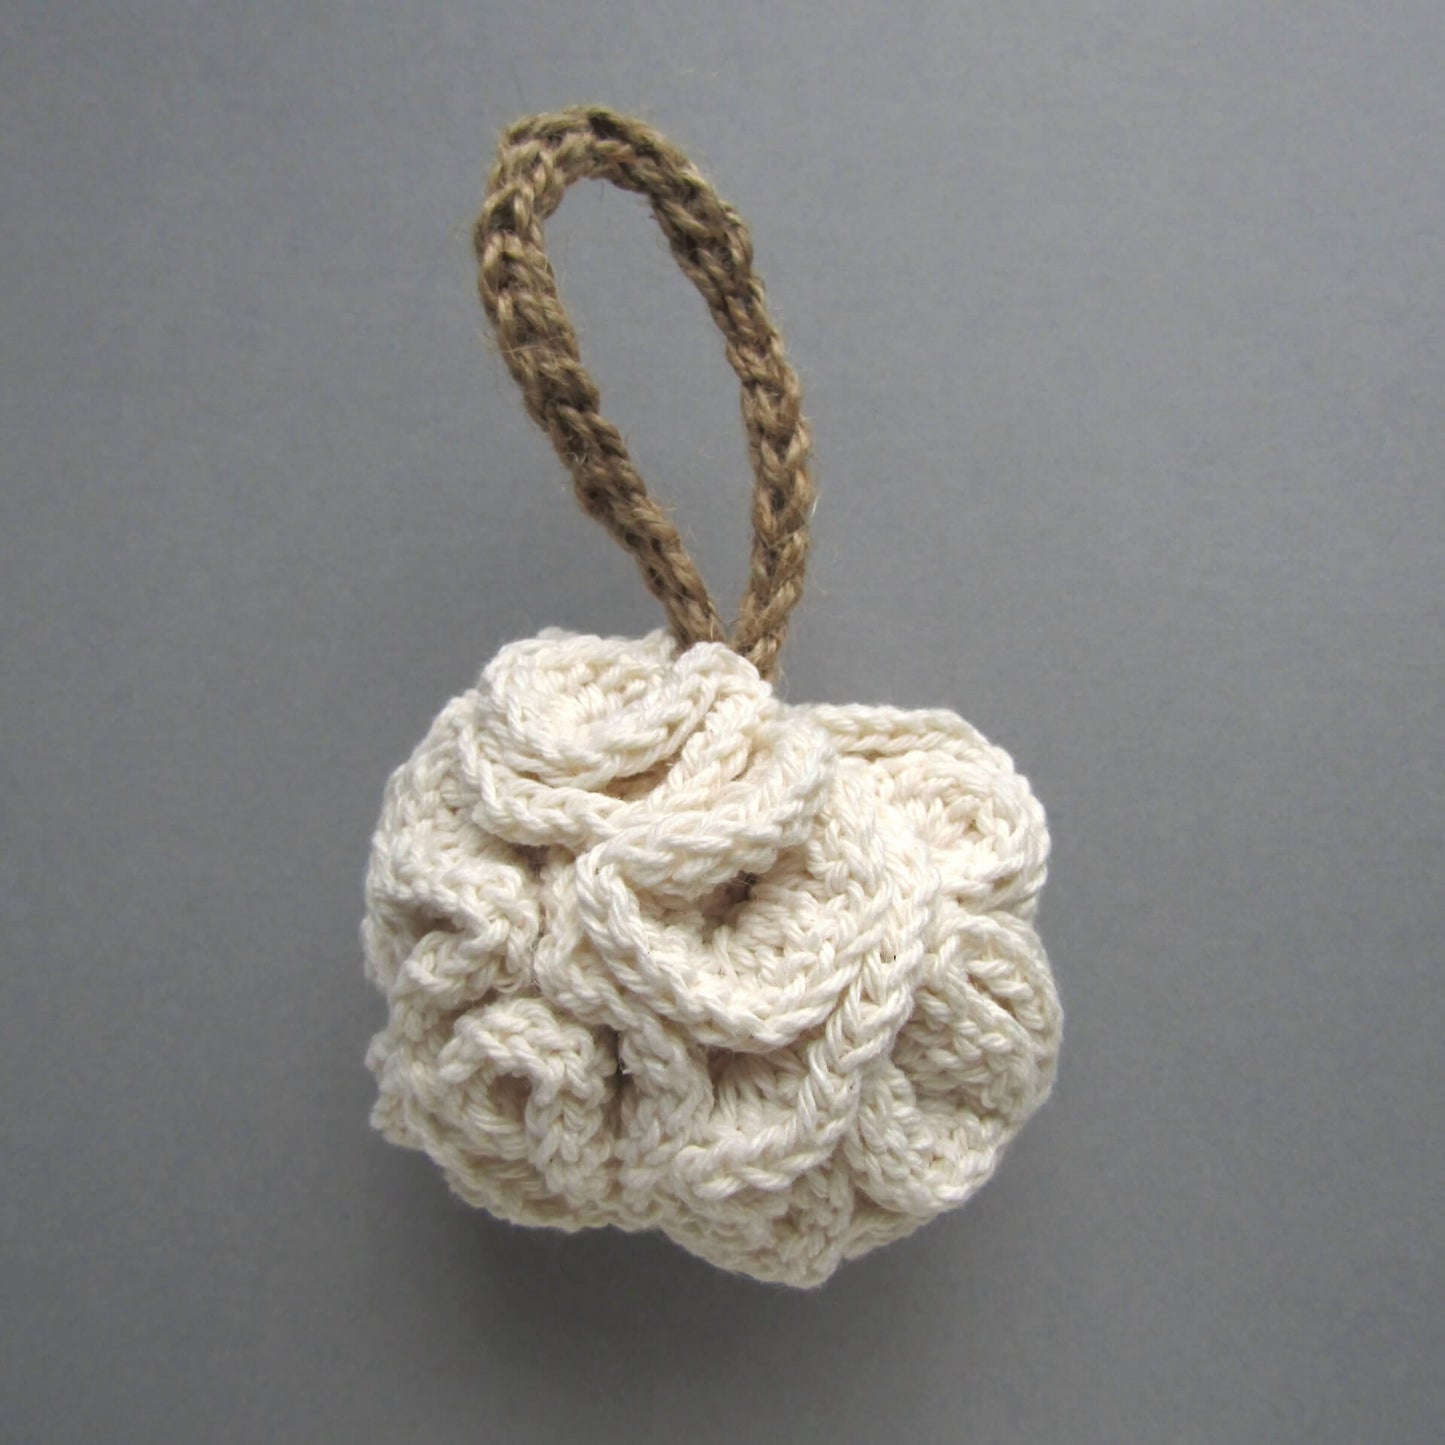 Tenguerengue Art & Craft Kits Crochet Kit: Sustainable Spa Set